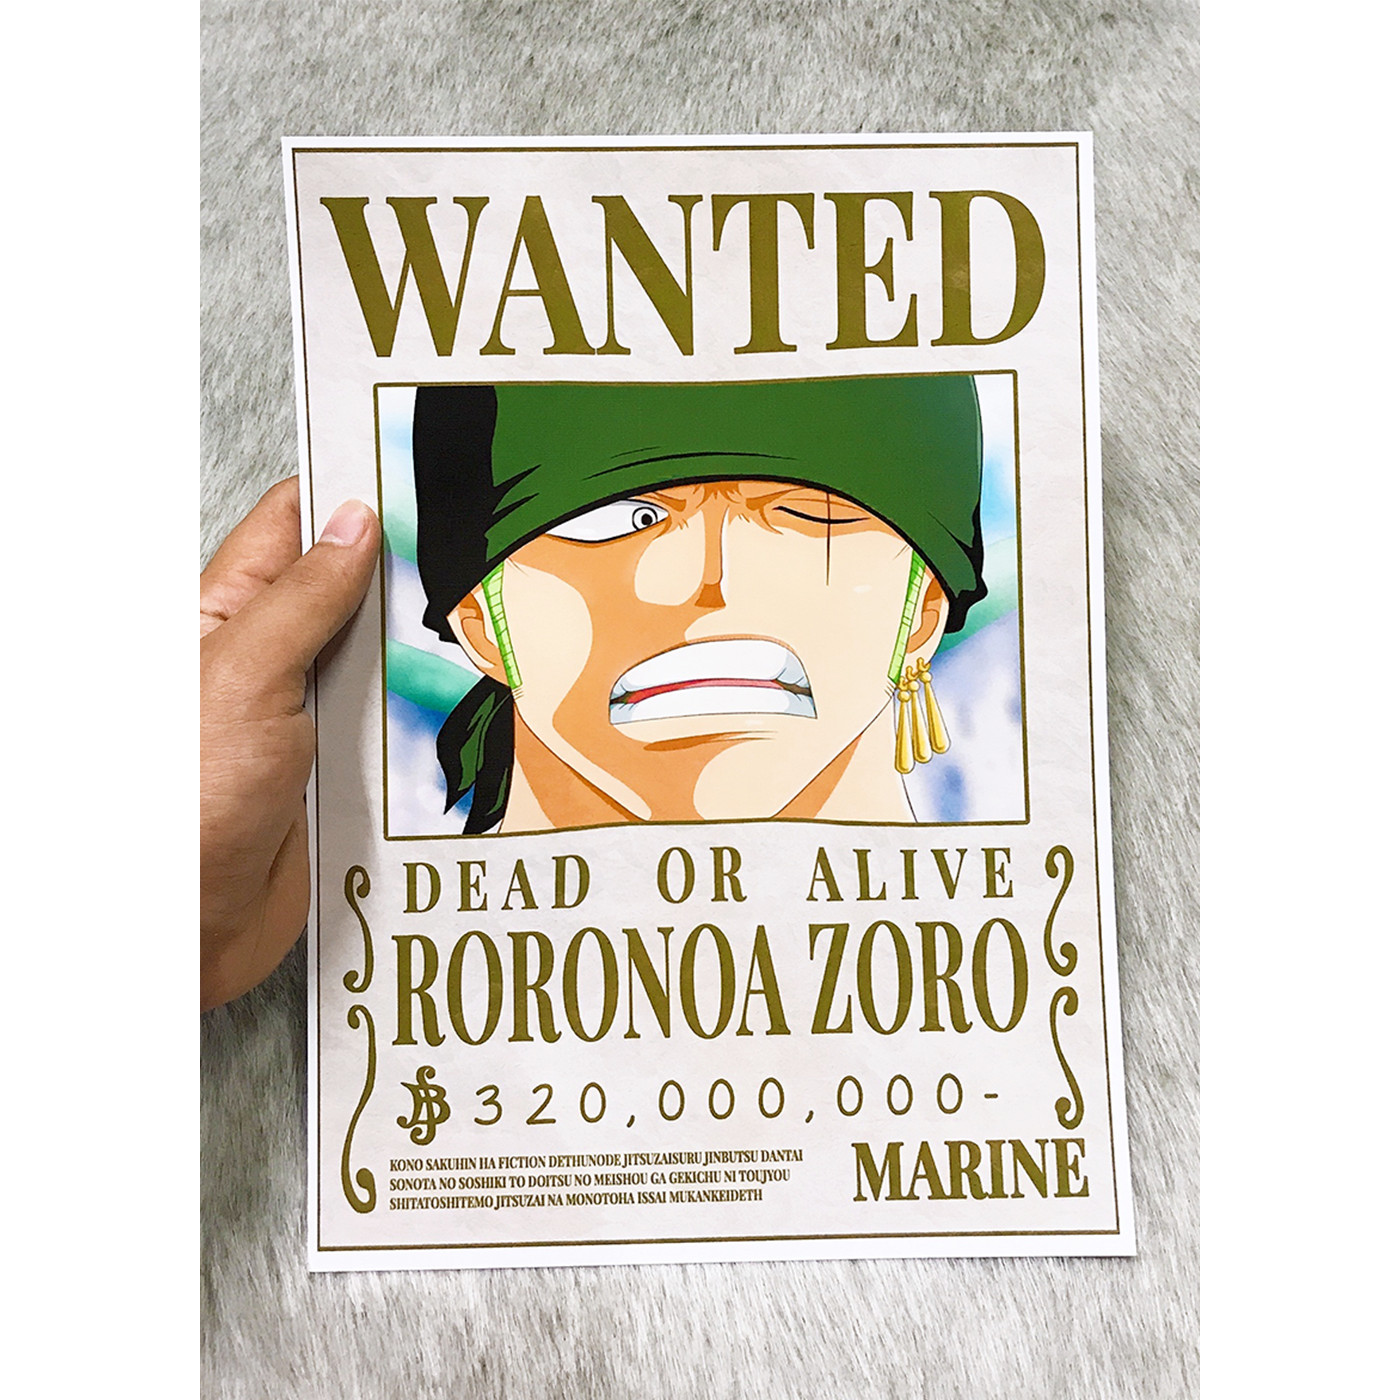 Hãy chiêm ngưỡng chiếc poster đầy màu sắc về nhân vật Zoro trong bộ truyện One Piece. Với kỹ năng kiếm thuật điêu luyện và tinh thần bất khuất, Zoro chắc chắn là một trong những thành viên đáng tin cậy nhất của băng hải tặc Mũ Rơm.